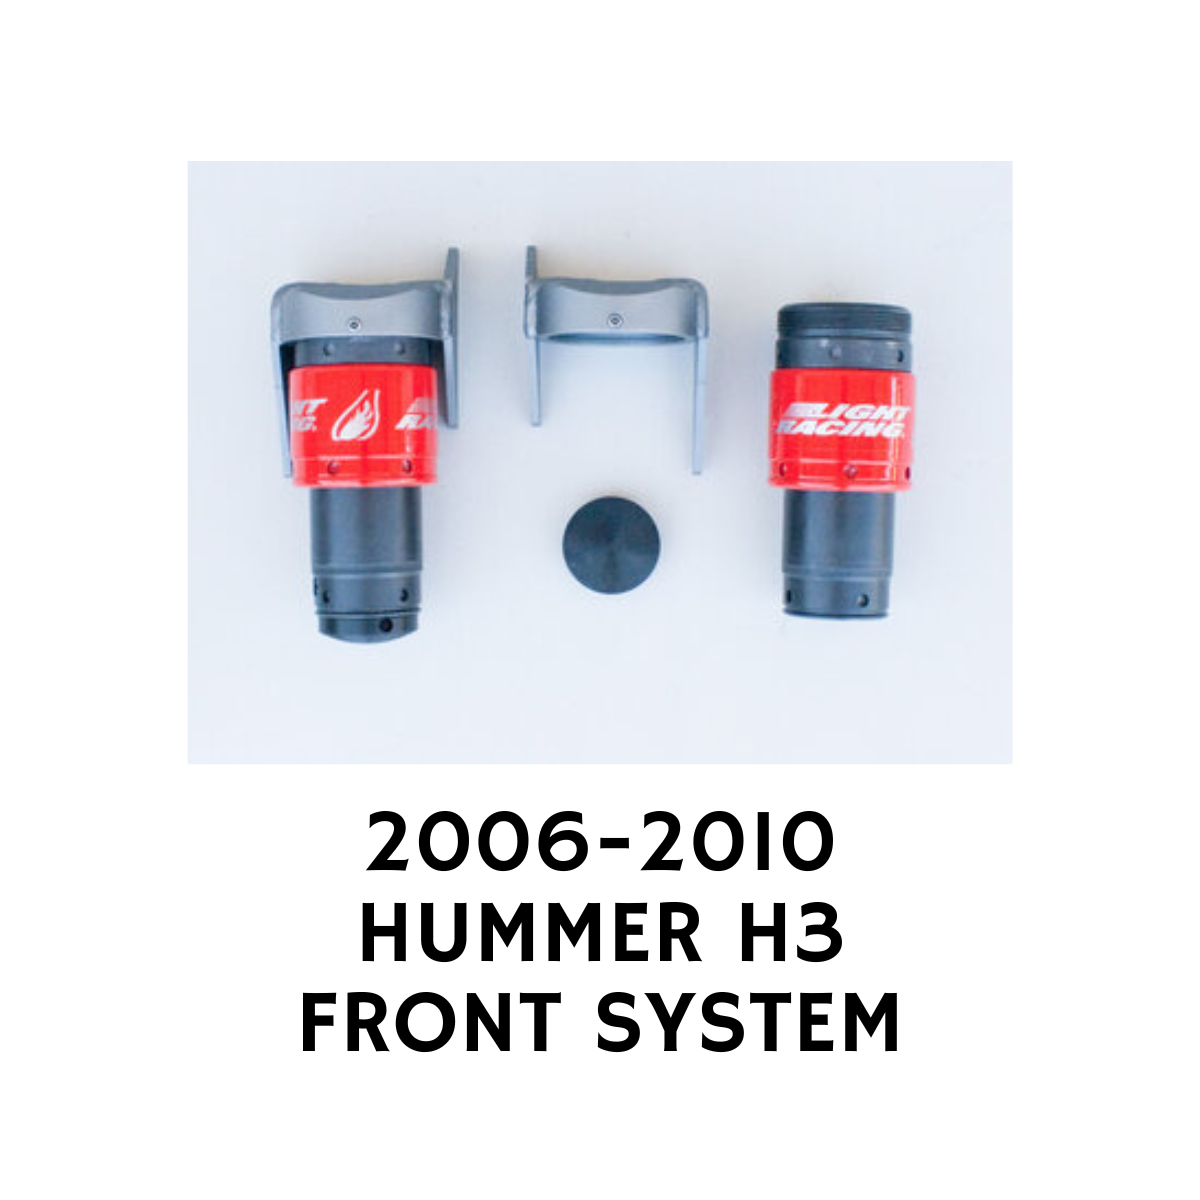 HUMMER H3 JOUNCESHOCK SYSTEM